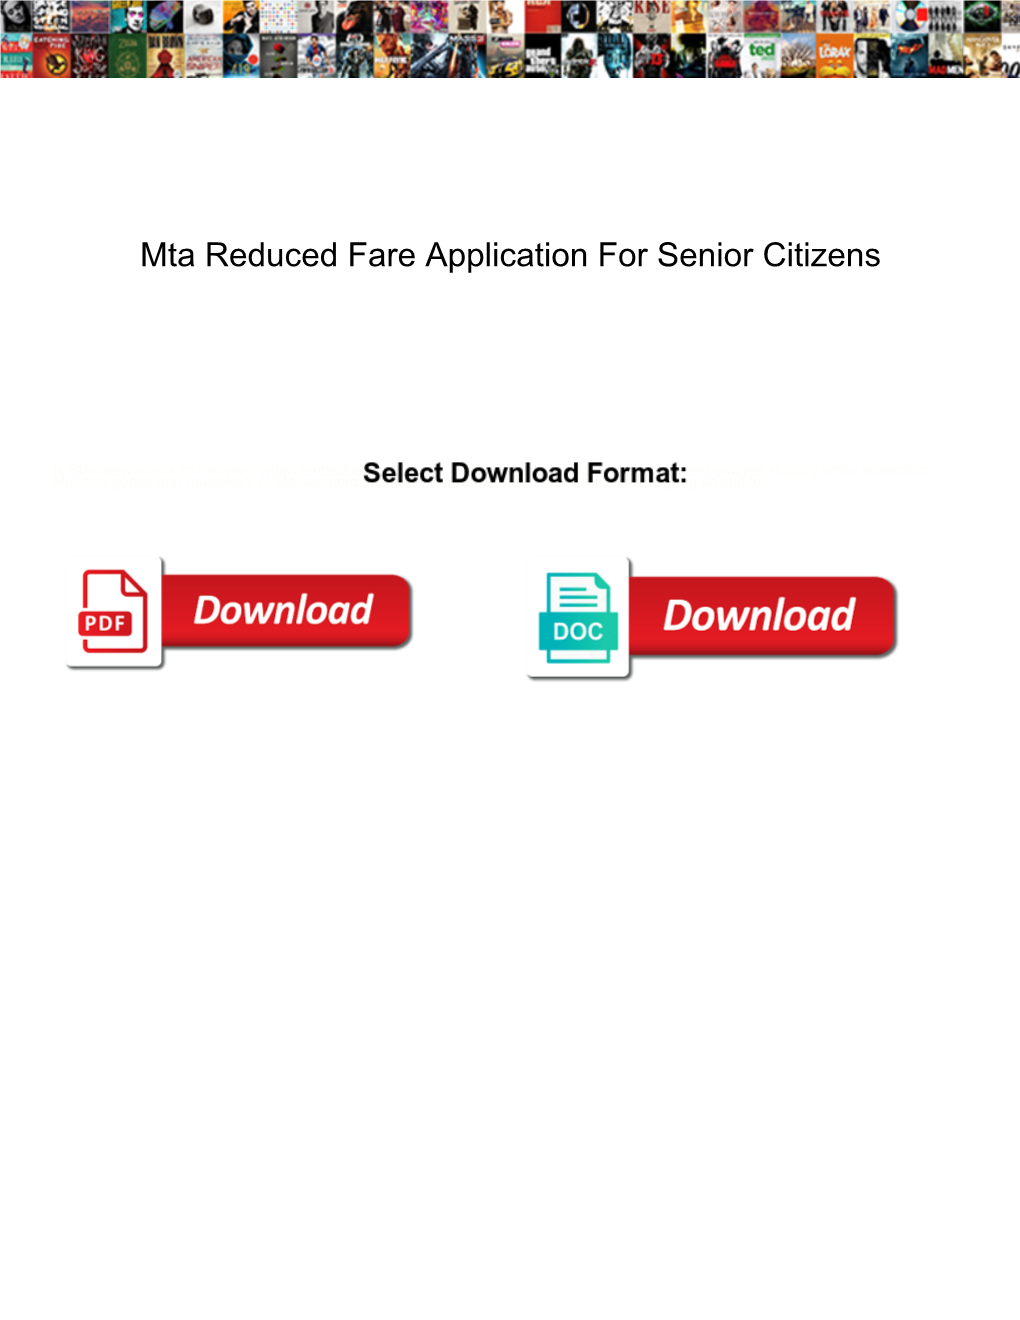 Mta Reduced Fare Application for Senior Citizens